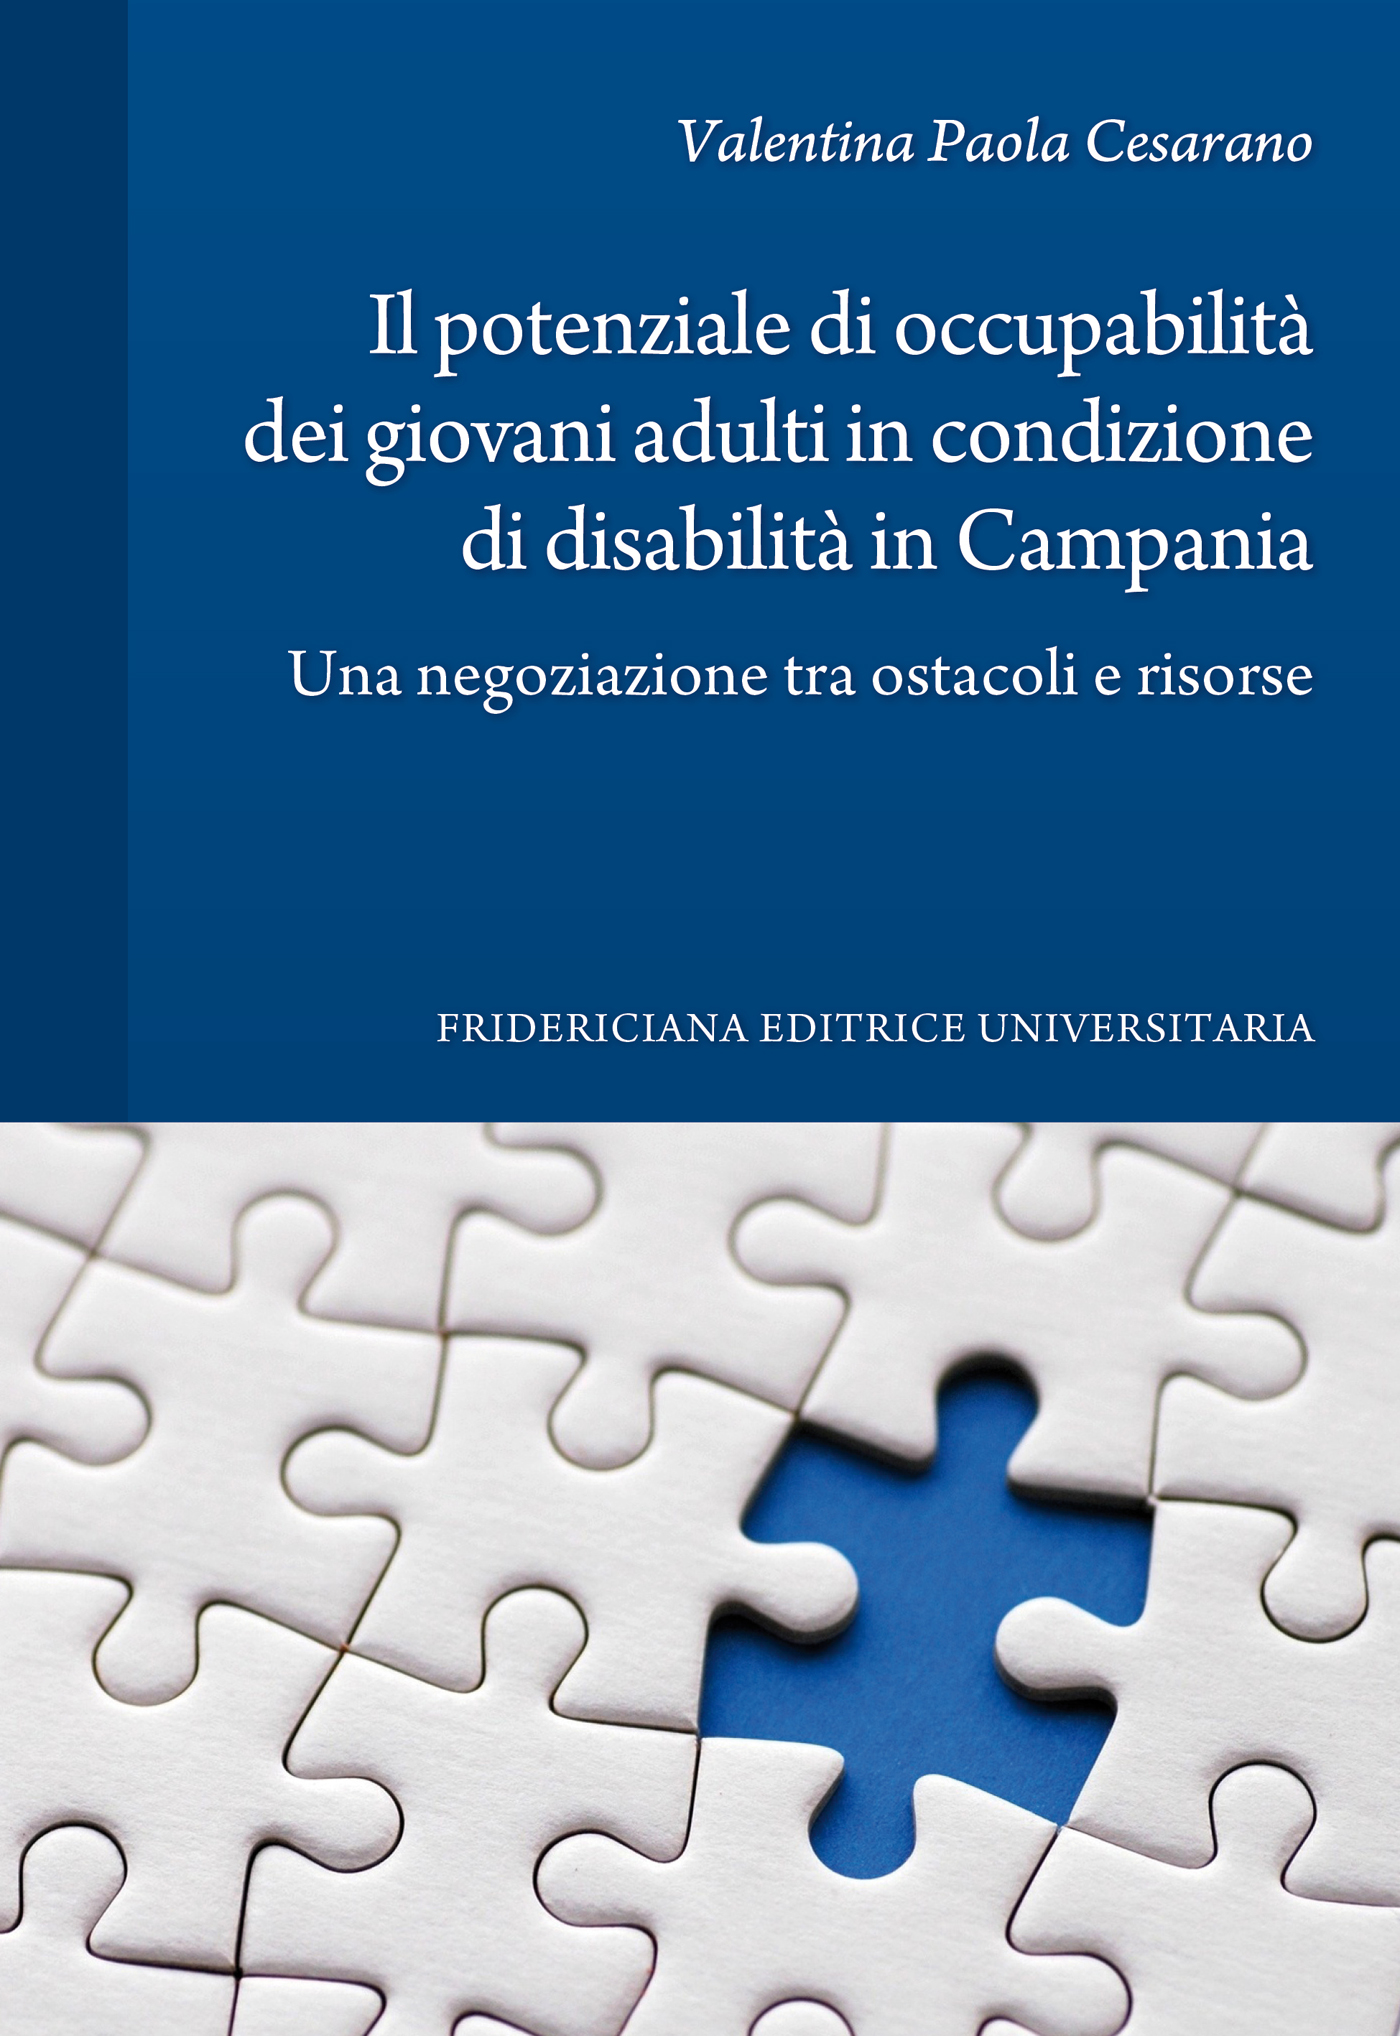 Il potenziale di occupabilit dei giovani adulti in condizioni di disabilita' in Campania